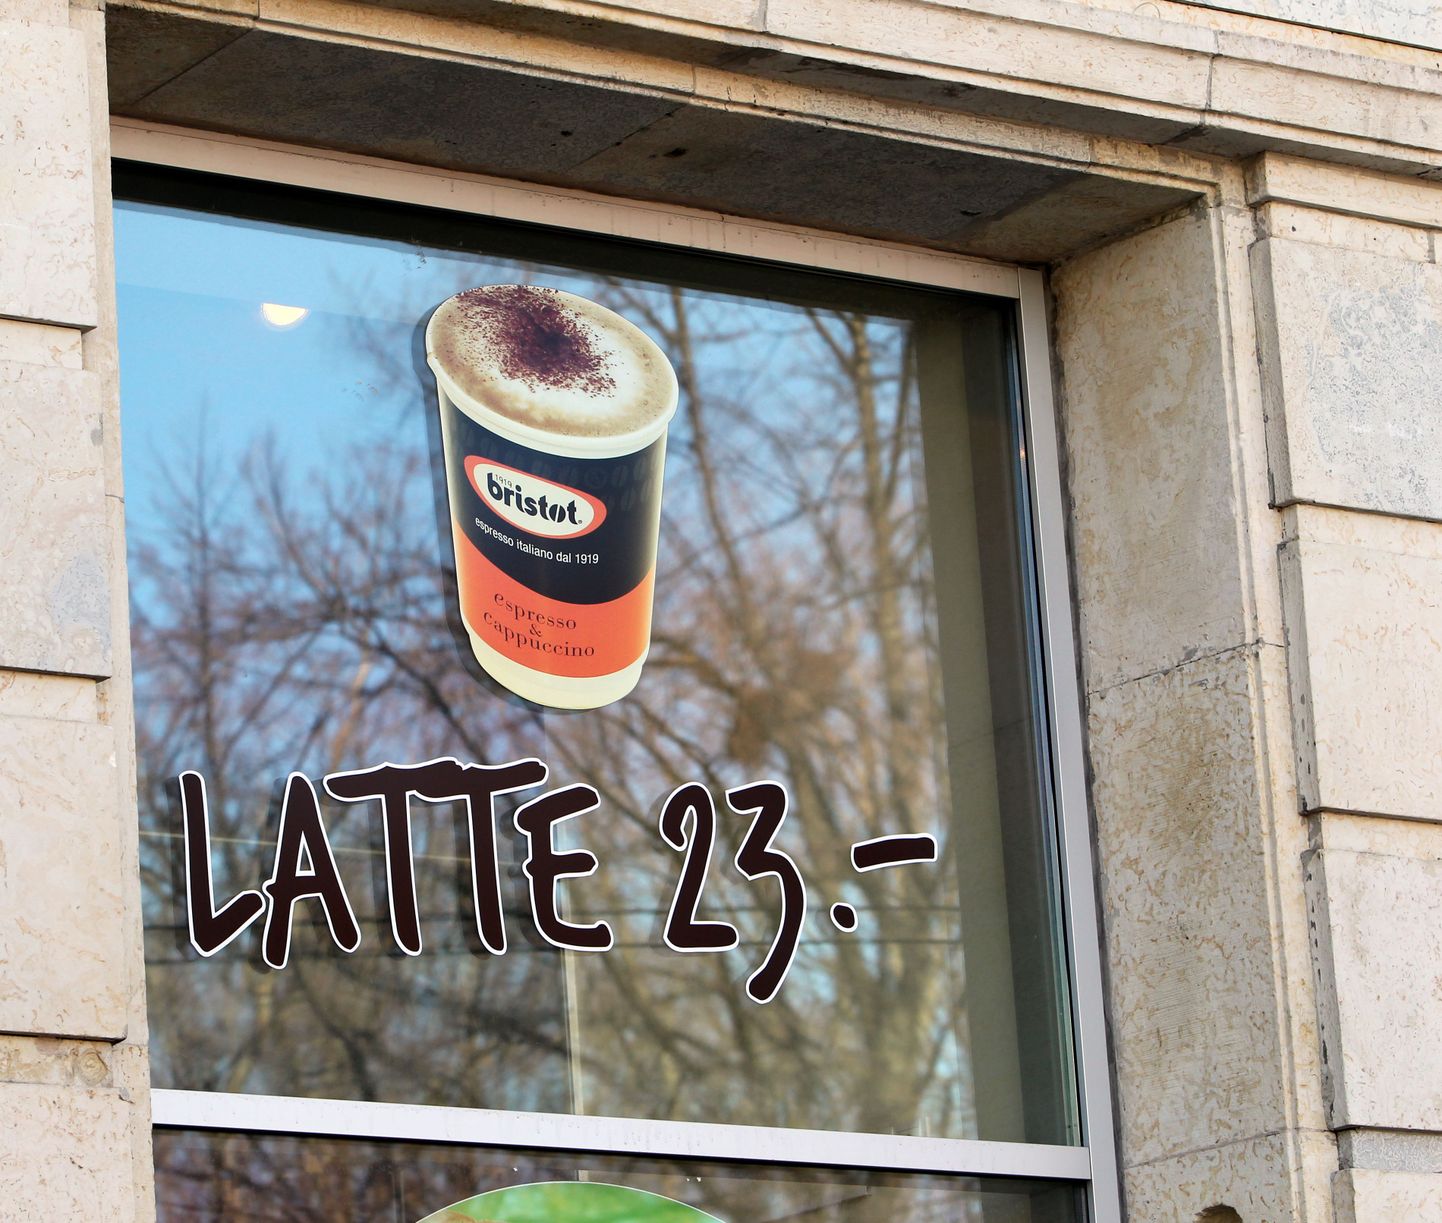 Путаница с ценниками после перехода на евро продолжалась долго. В апреле на витрине кафе в Таллинне цена на чашку кофе еще оставалась в кронах.